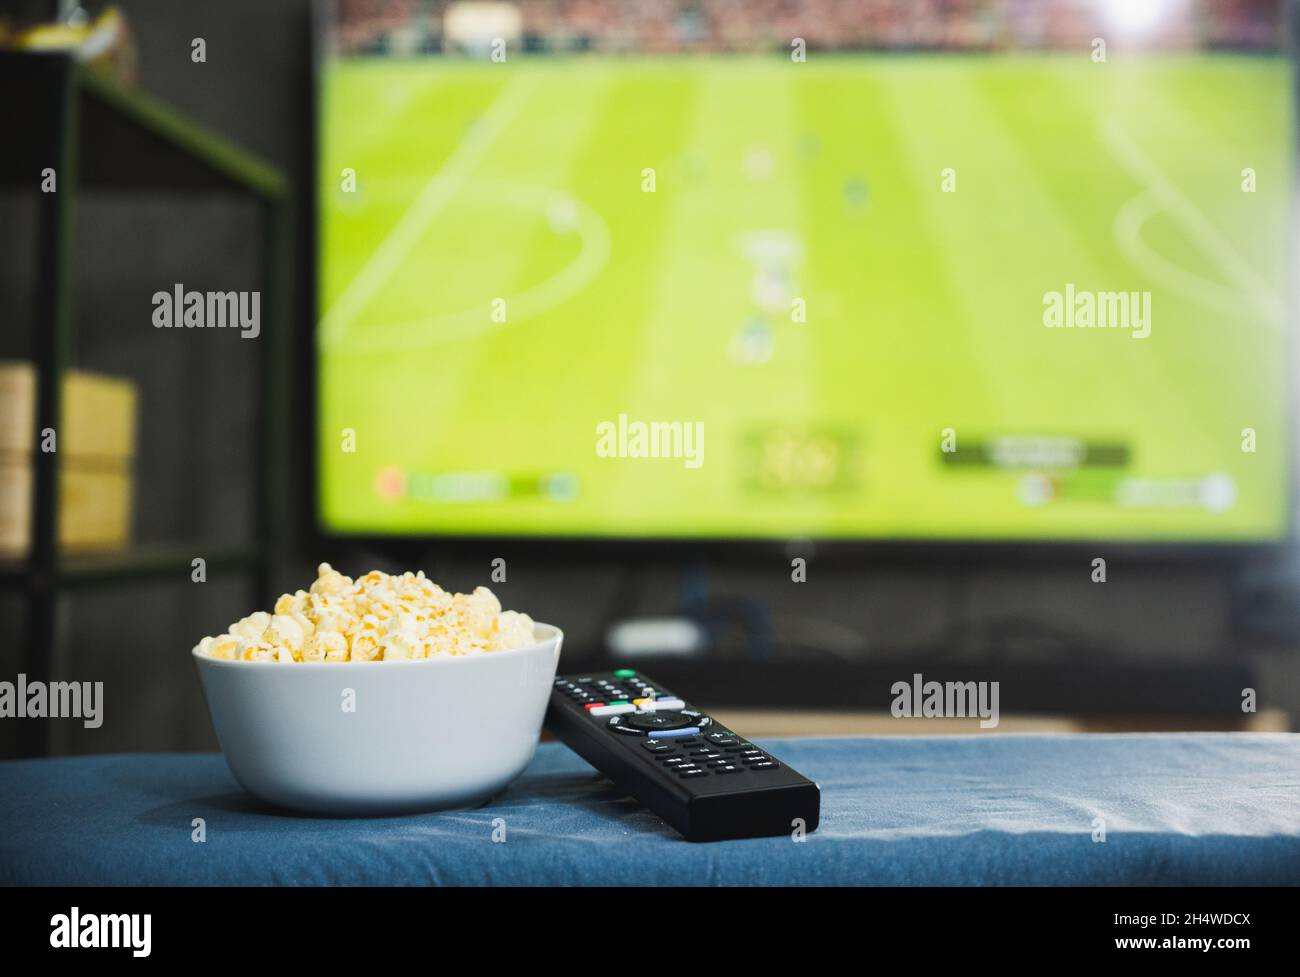 Popcorn- und Fernsehfernbedienung auf dem Hintergrund des Fernsehbildschirms des Fußballprogramms. Fernsehen schauen Entspannungskonzept. Stockfoto